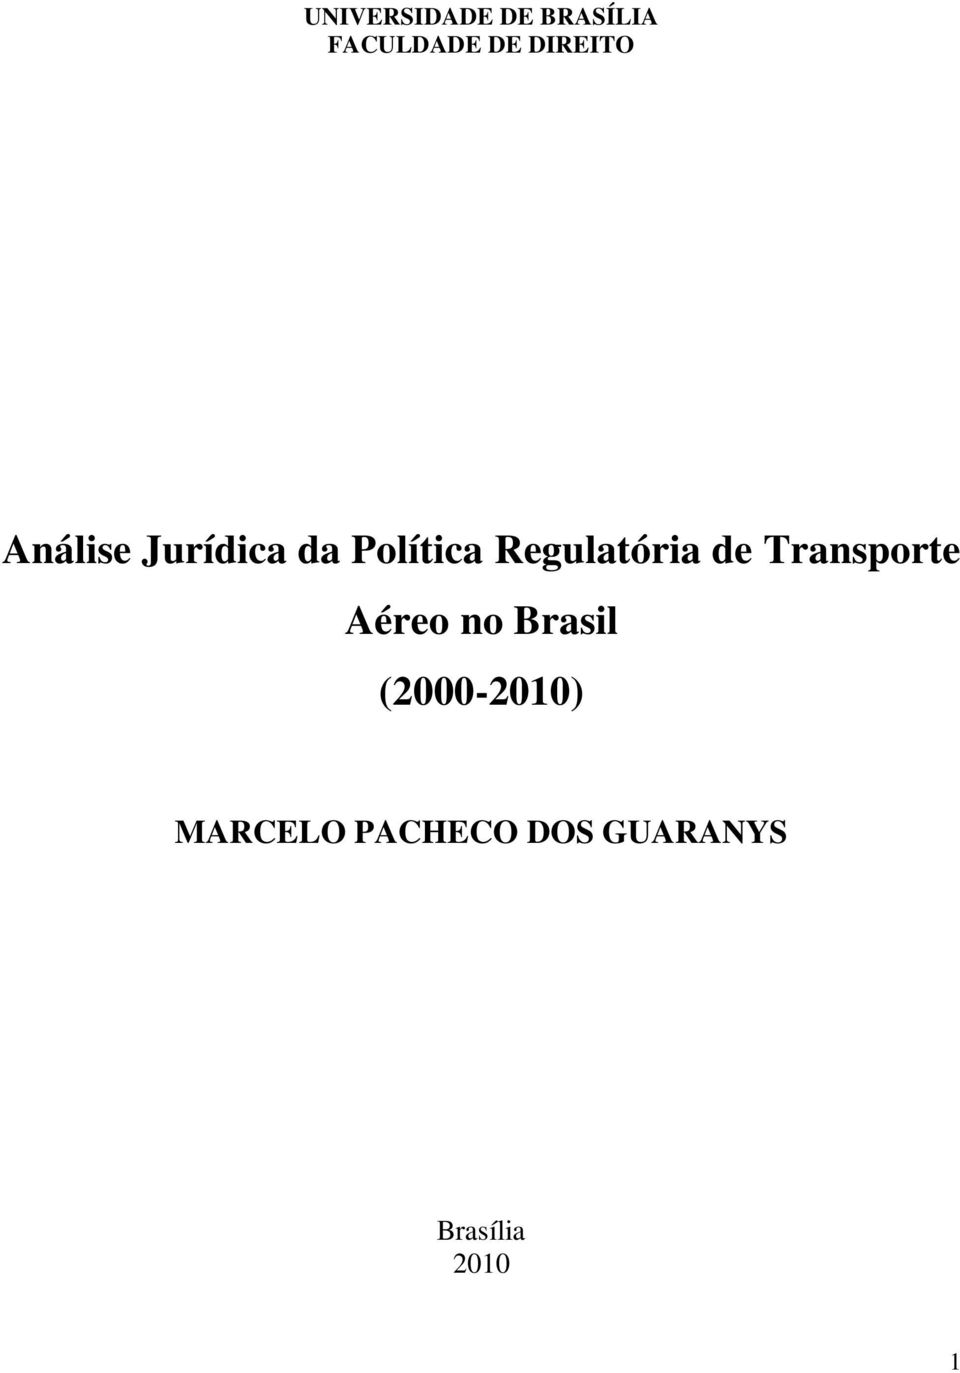 Regulatória de Transporte Aéreo no Brasil